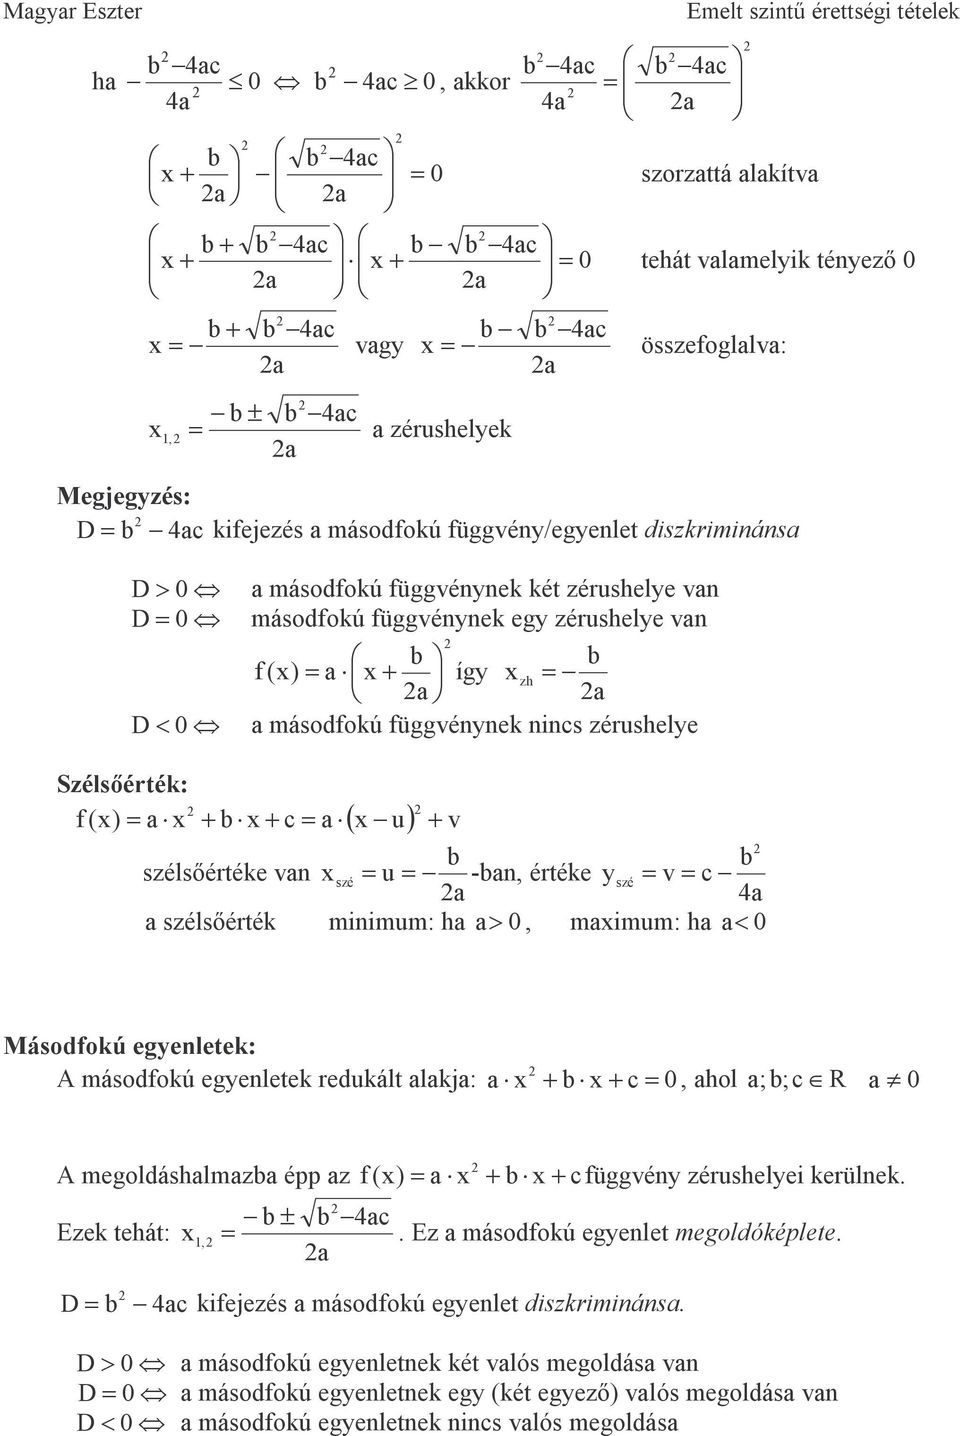 szé = u= -n, értéke yszé = v= c szélsıérték minimum: h > 0, mimum: h < 0 Másodfokú egyenletek: A másodfokú egyenletek redukált lkj: + 0, hol ; ;c R 0 A megoldáshlmz épp z f () = + c függvény